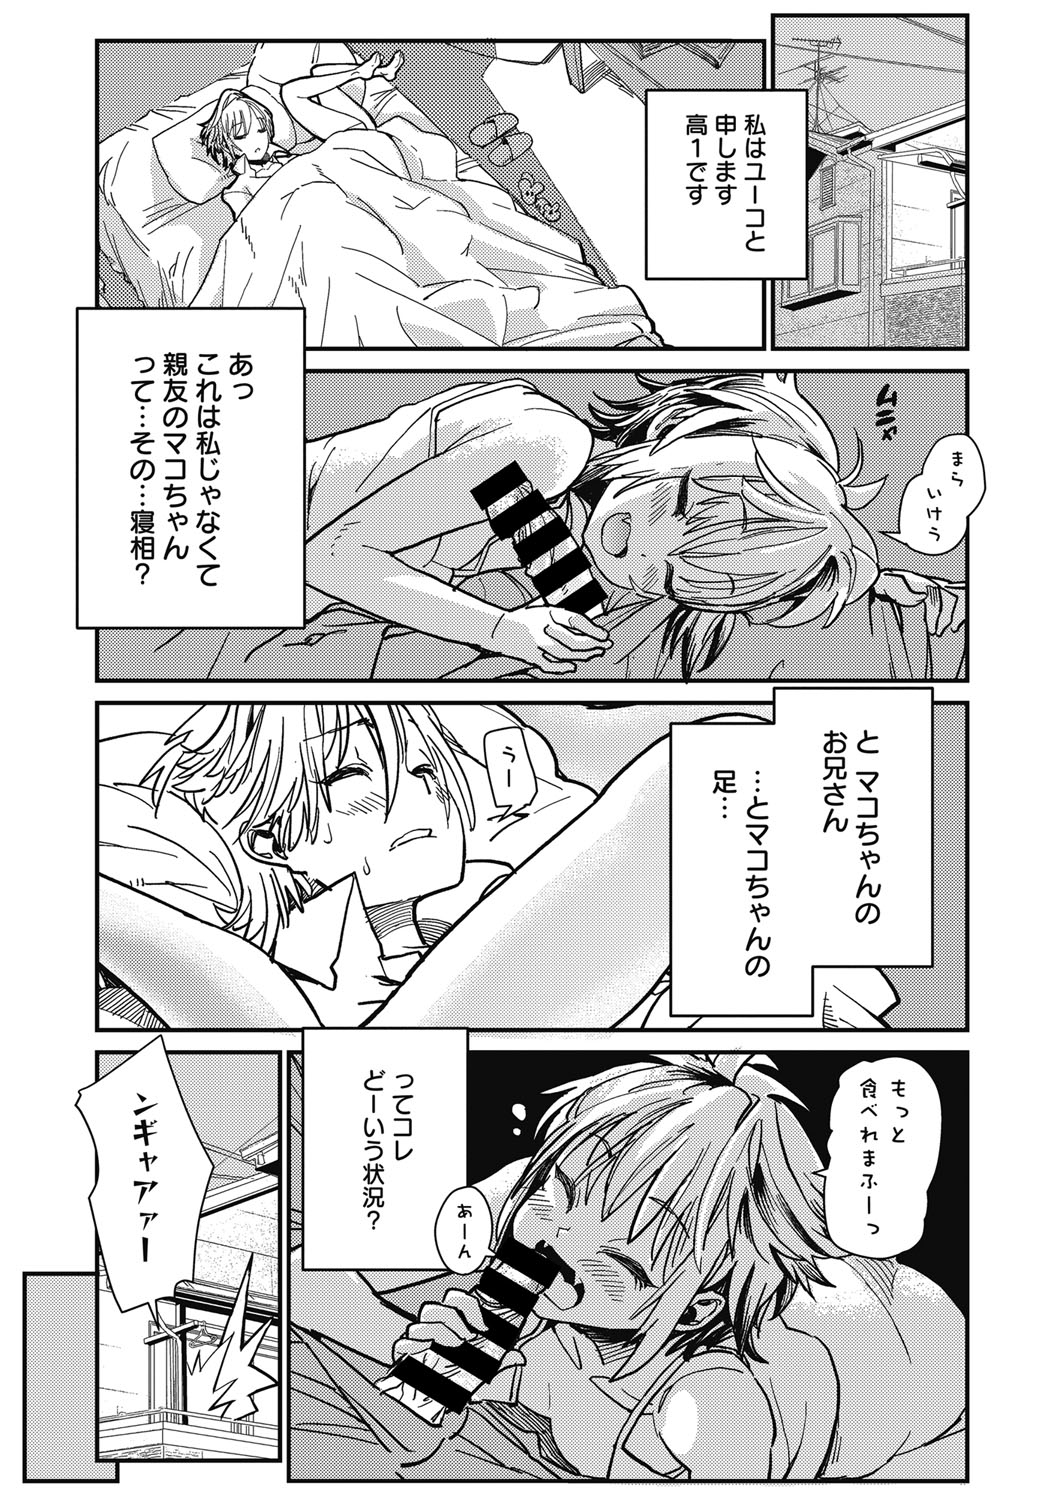 Web Manga Bangaichi Vol. 11 web 漫画ばんがいち Vol.11